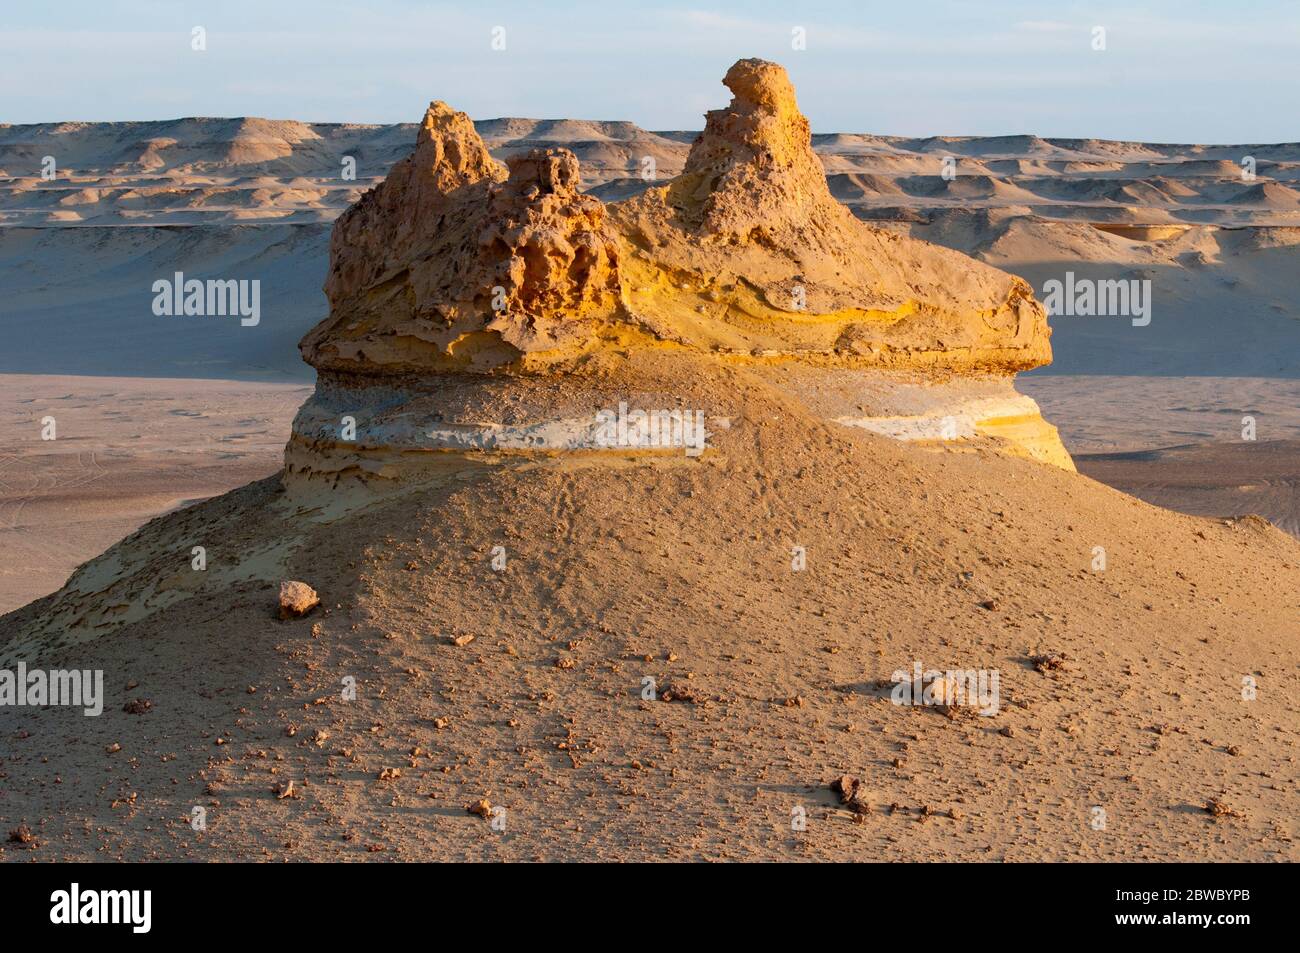 Les formes de relief du désert formées par l'érosion éolienne à Wadi El Hitan, Vallée des fossiles, dans le désert occidental de l'Égypte Banque D'Images